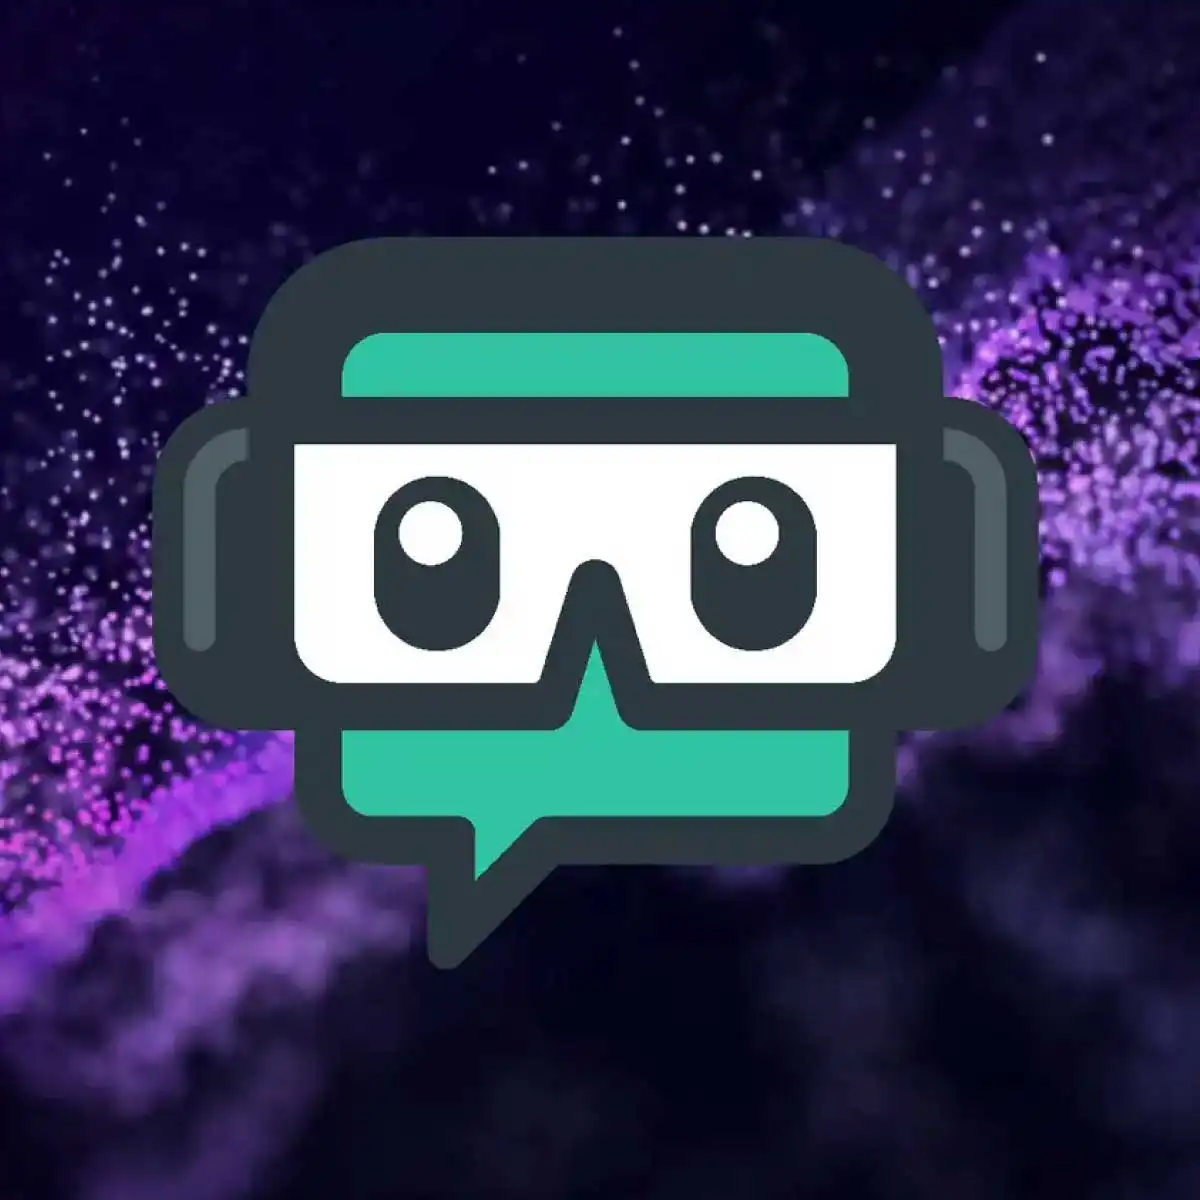 Twitch Streamlabs OBS Nedir, Nasıl Kullanılır, Kayıt Alınır?